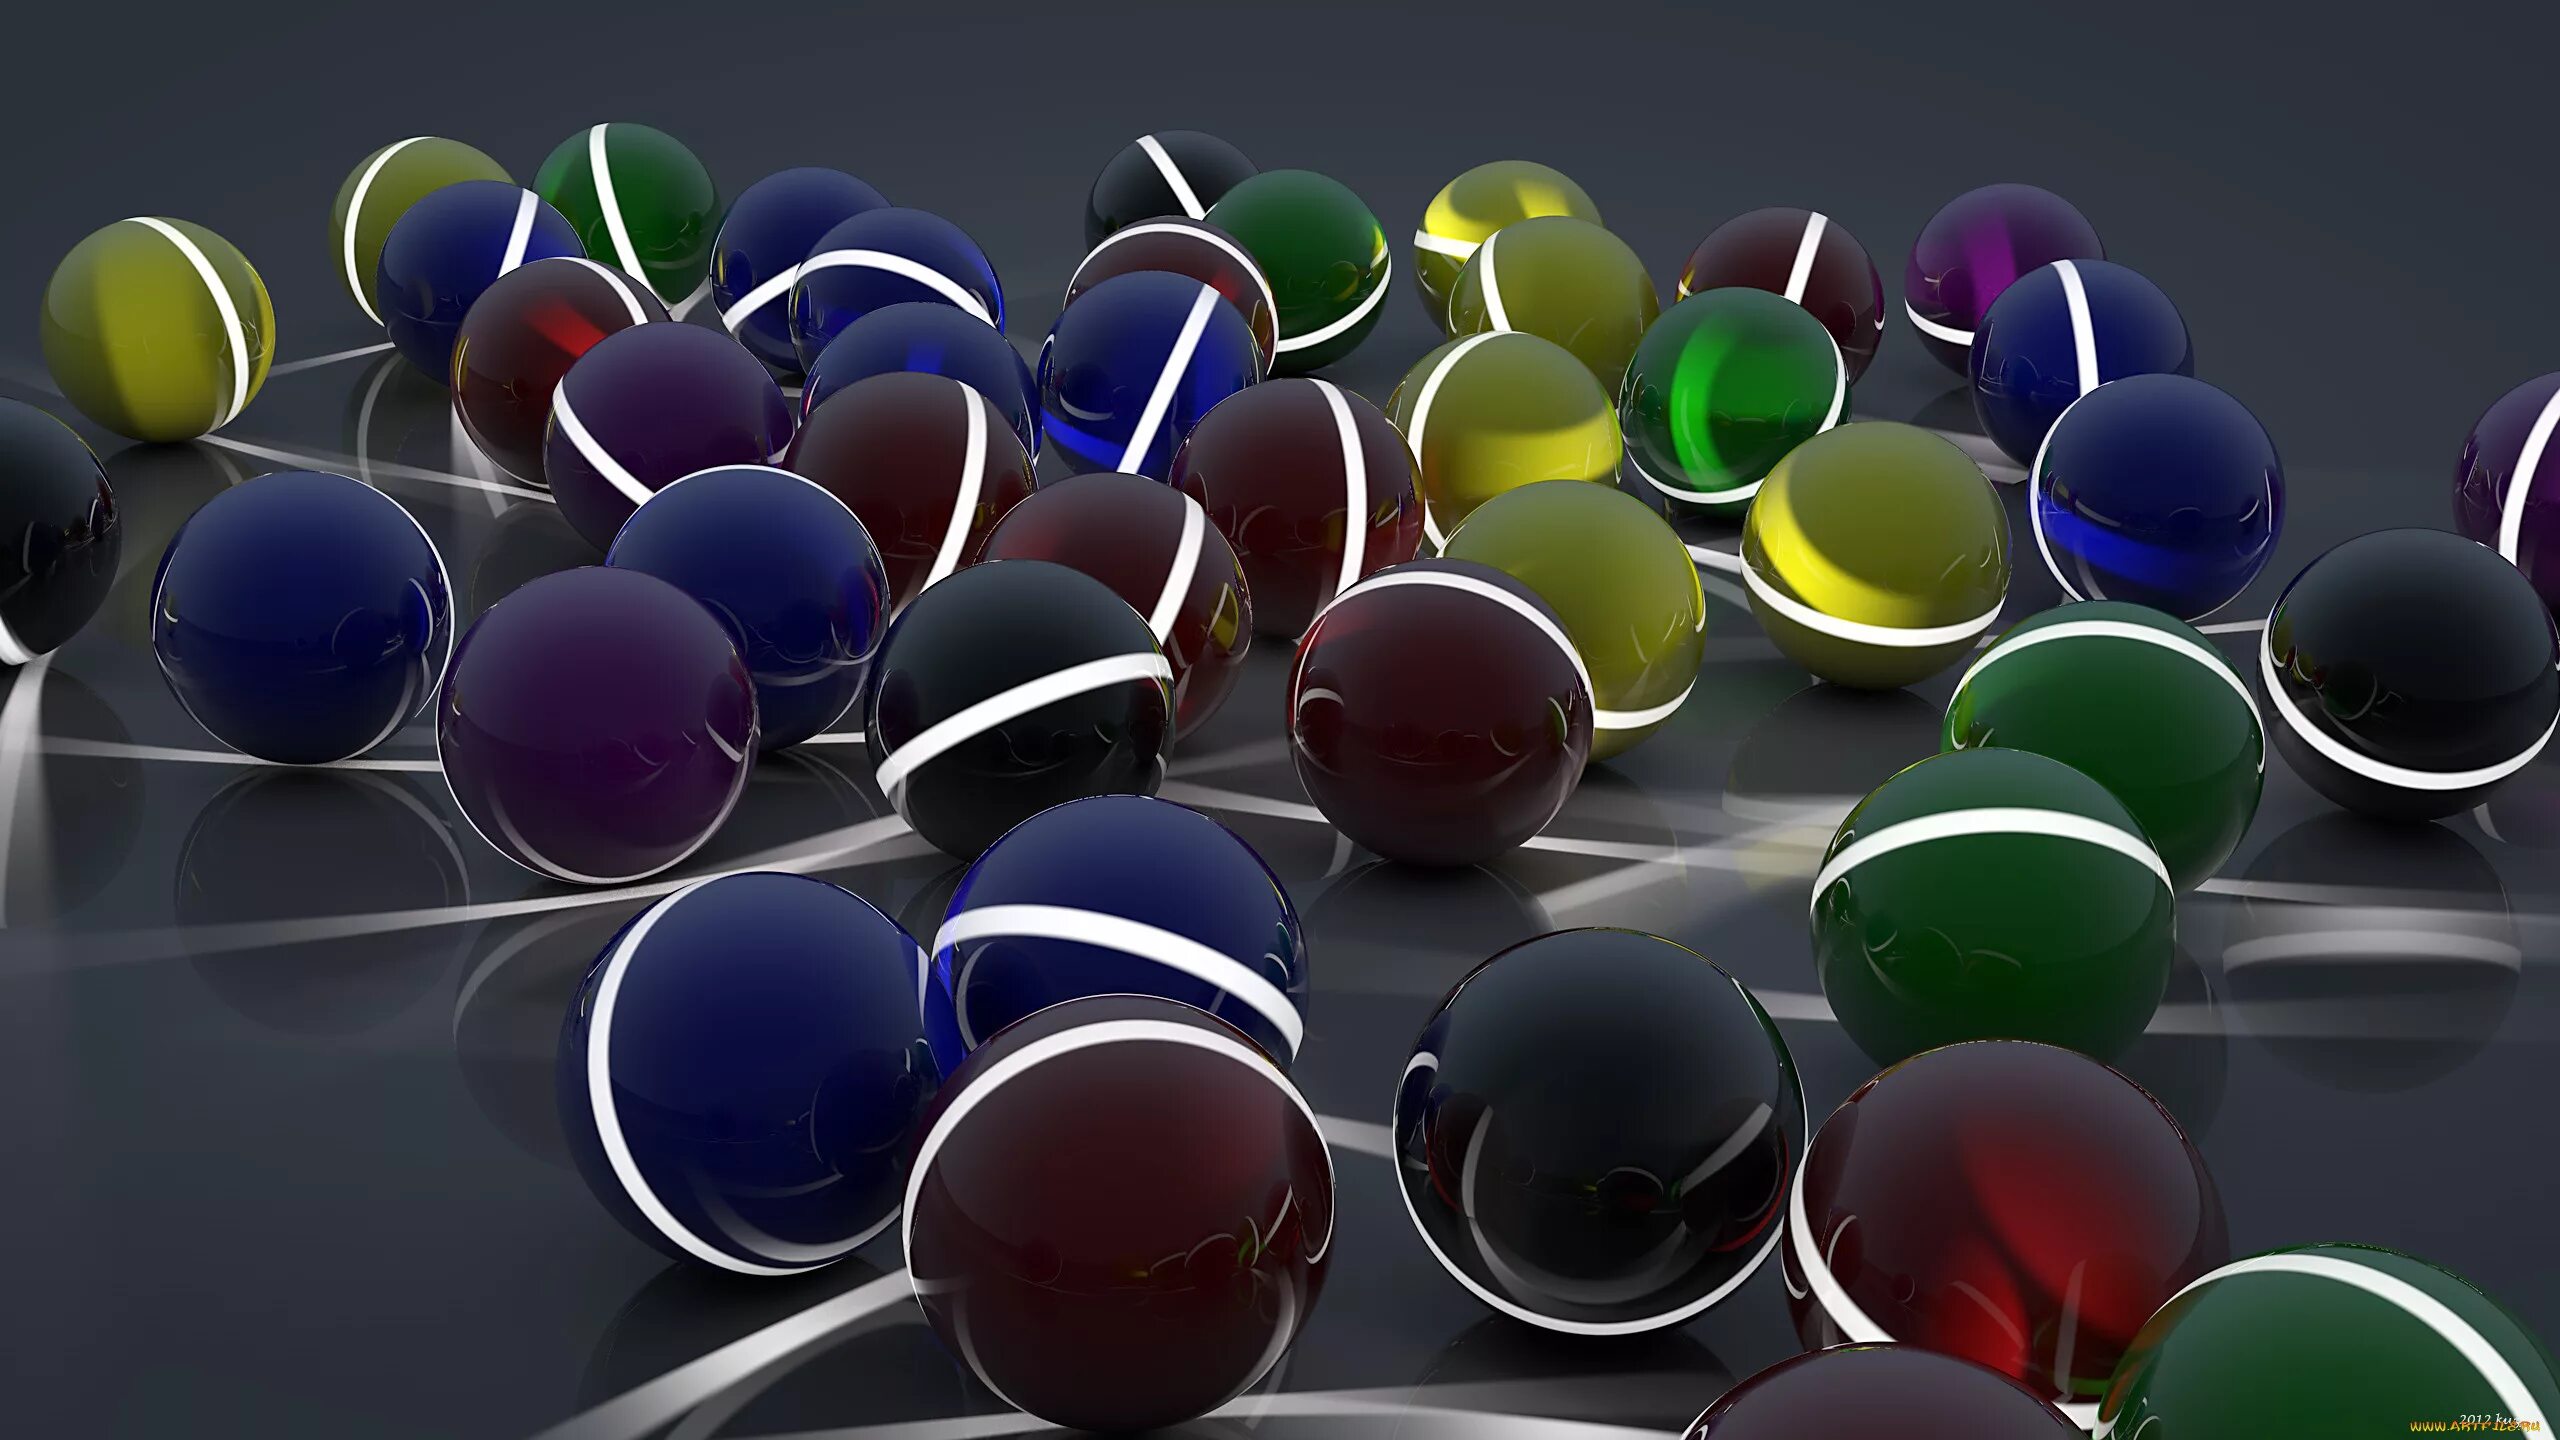 Заставка на рабочий стол шарики. Цветные стеклянные шарики. Оригинальный рабочий стол. Абстракция шары.